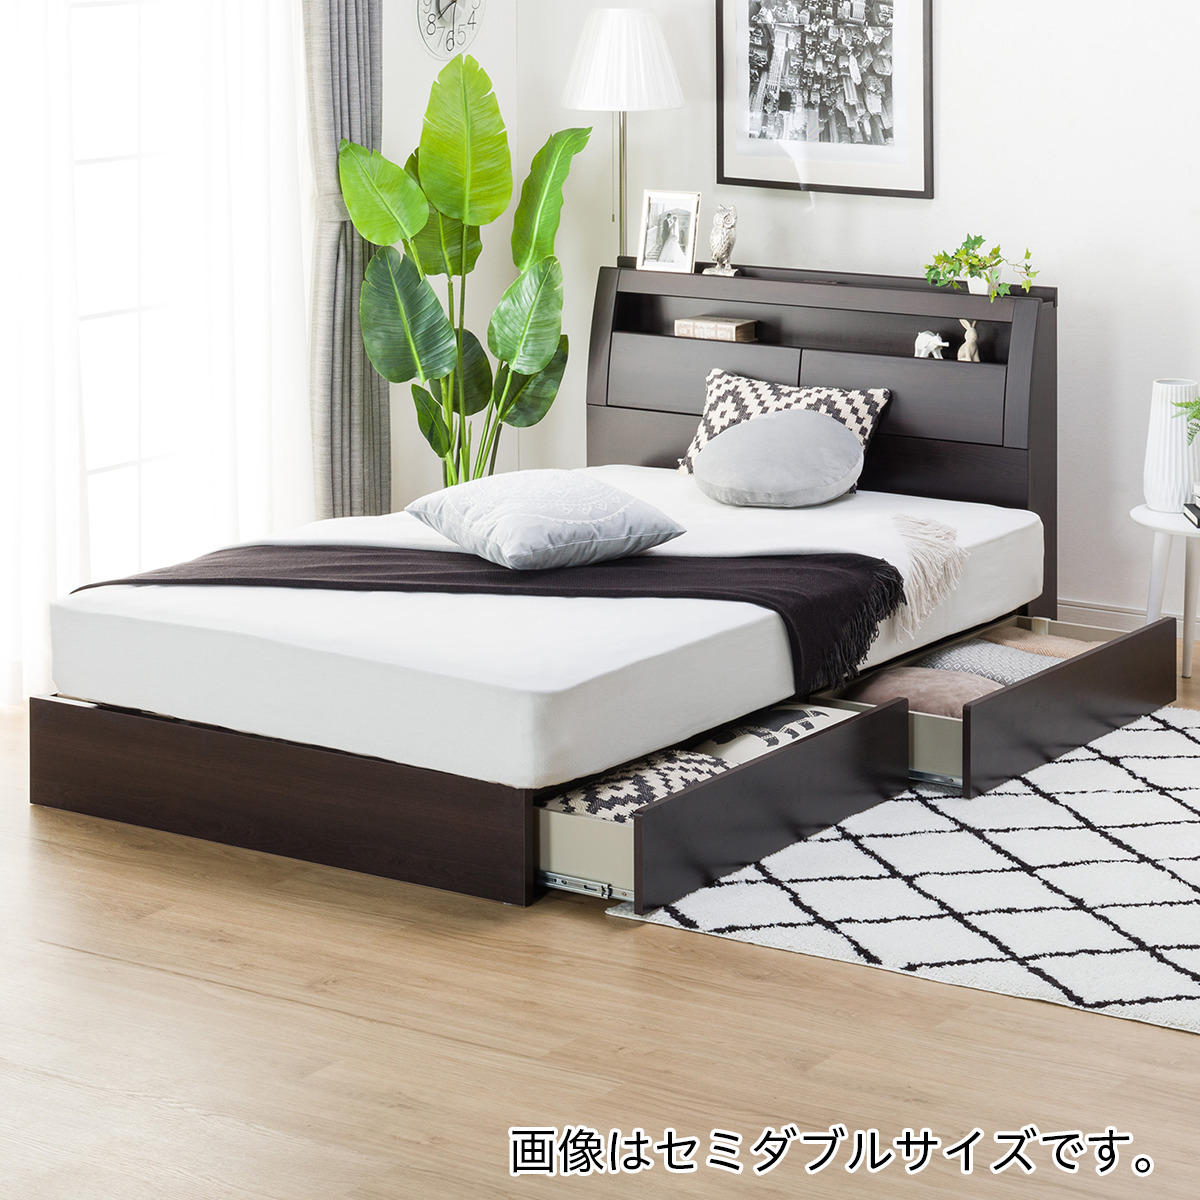 ニトリ ベットセット フレーム マットレス クイーンサイズ 家具 寝具 